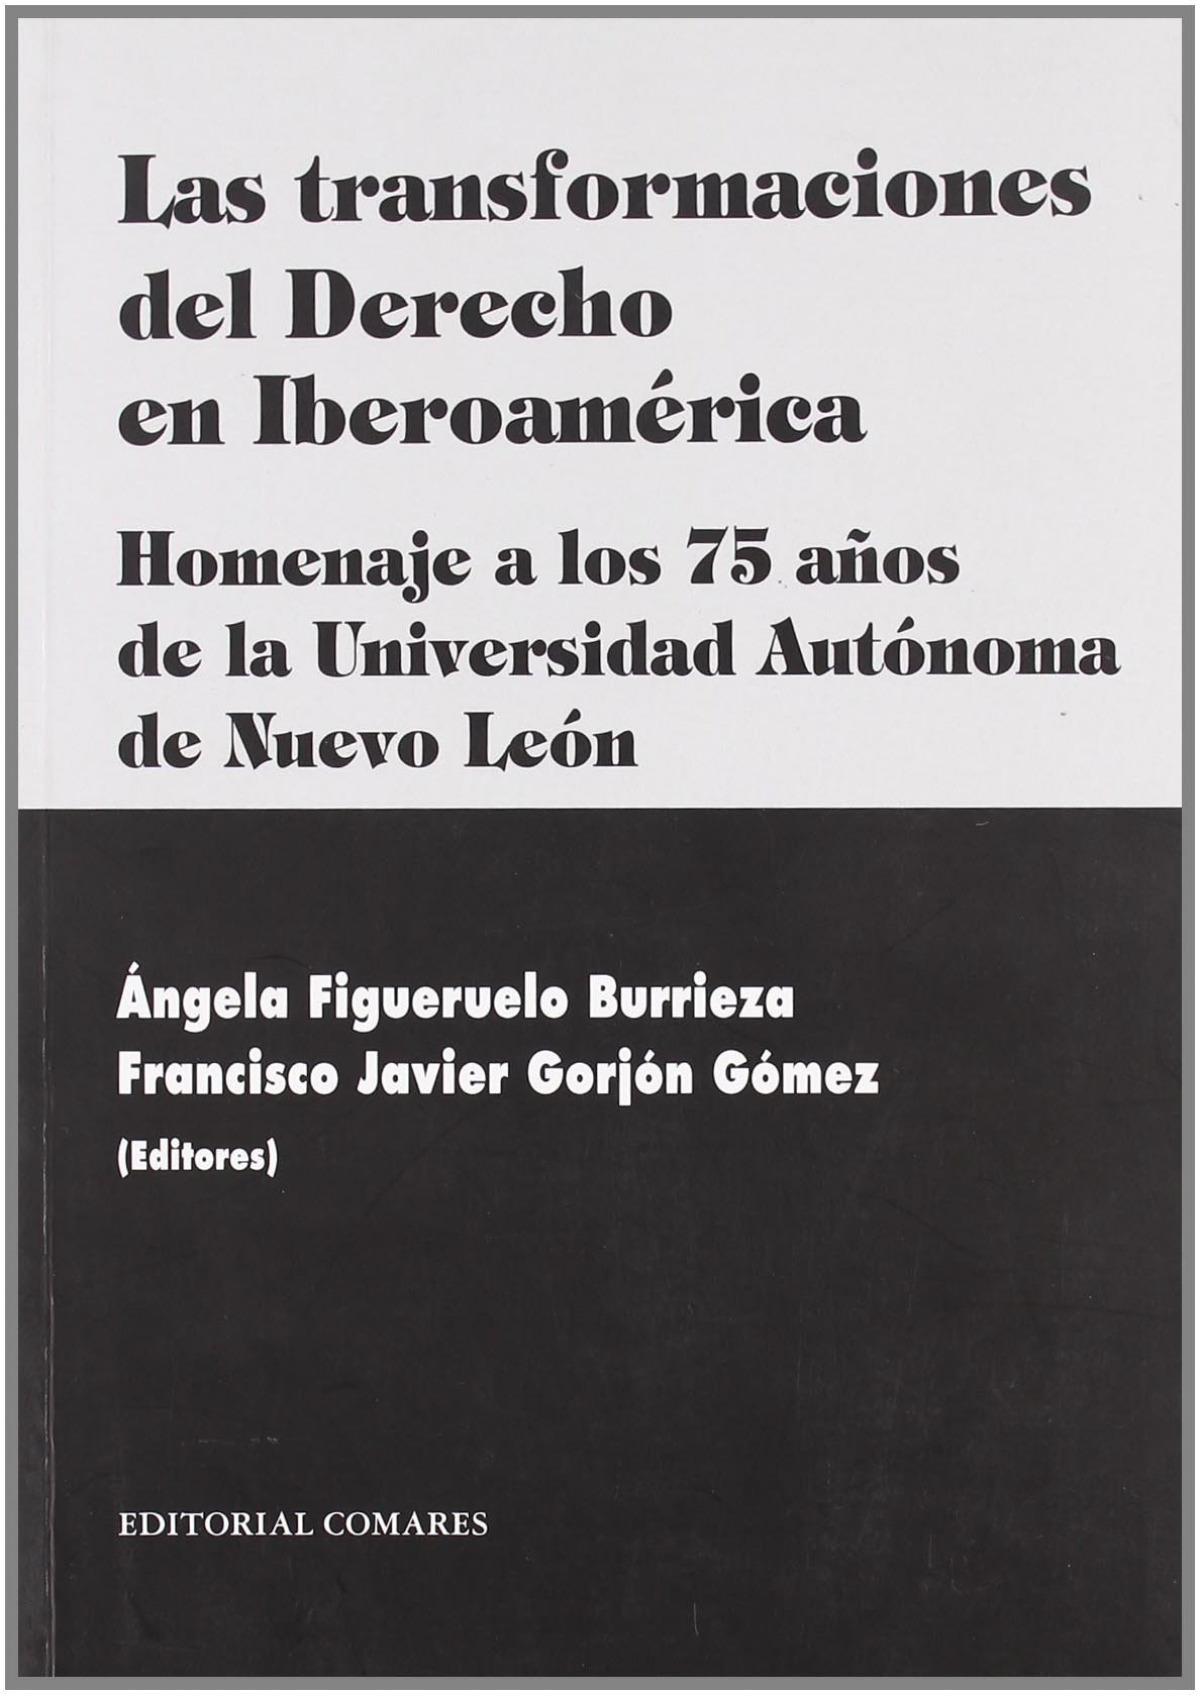 Las transformaciones del derecho en iberoamerica - Figueruelo Burrieza, Angela